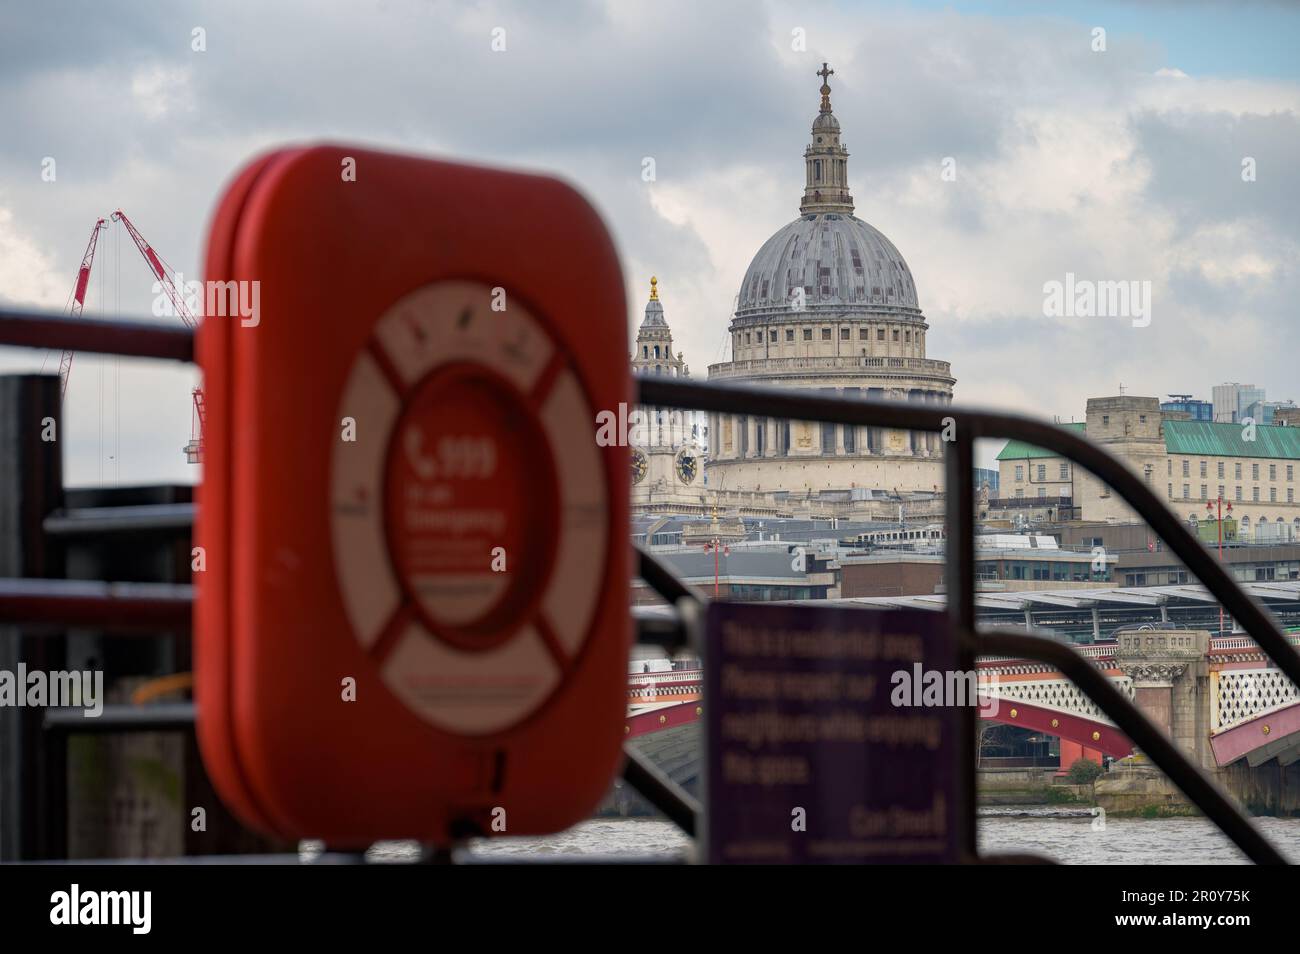 LONDRA - 21 aprile 2023: La Cattedrale di St Paul, uno dei monumenti più rappresentativi di Londra, catturata con un anello di vita rosso fuori fuoco nel forgroun Foto Stock